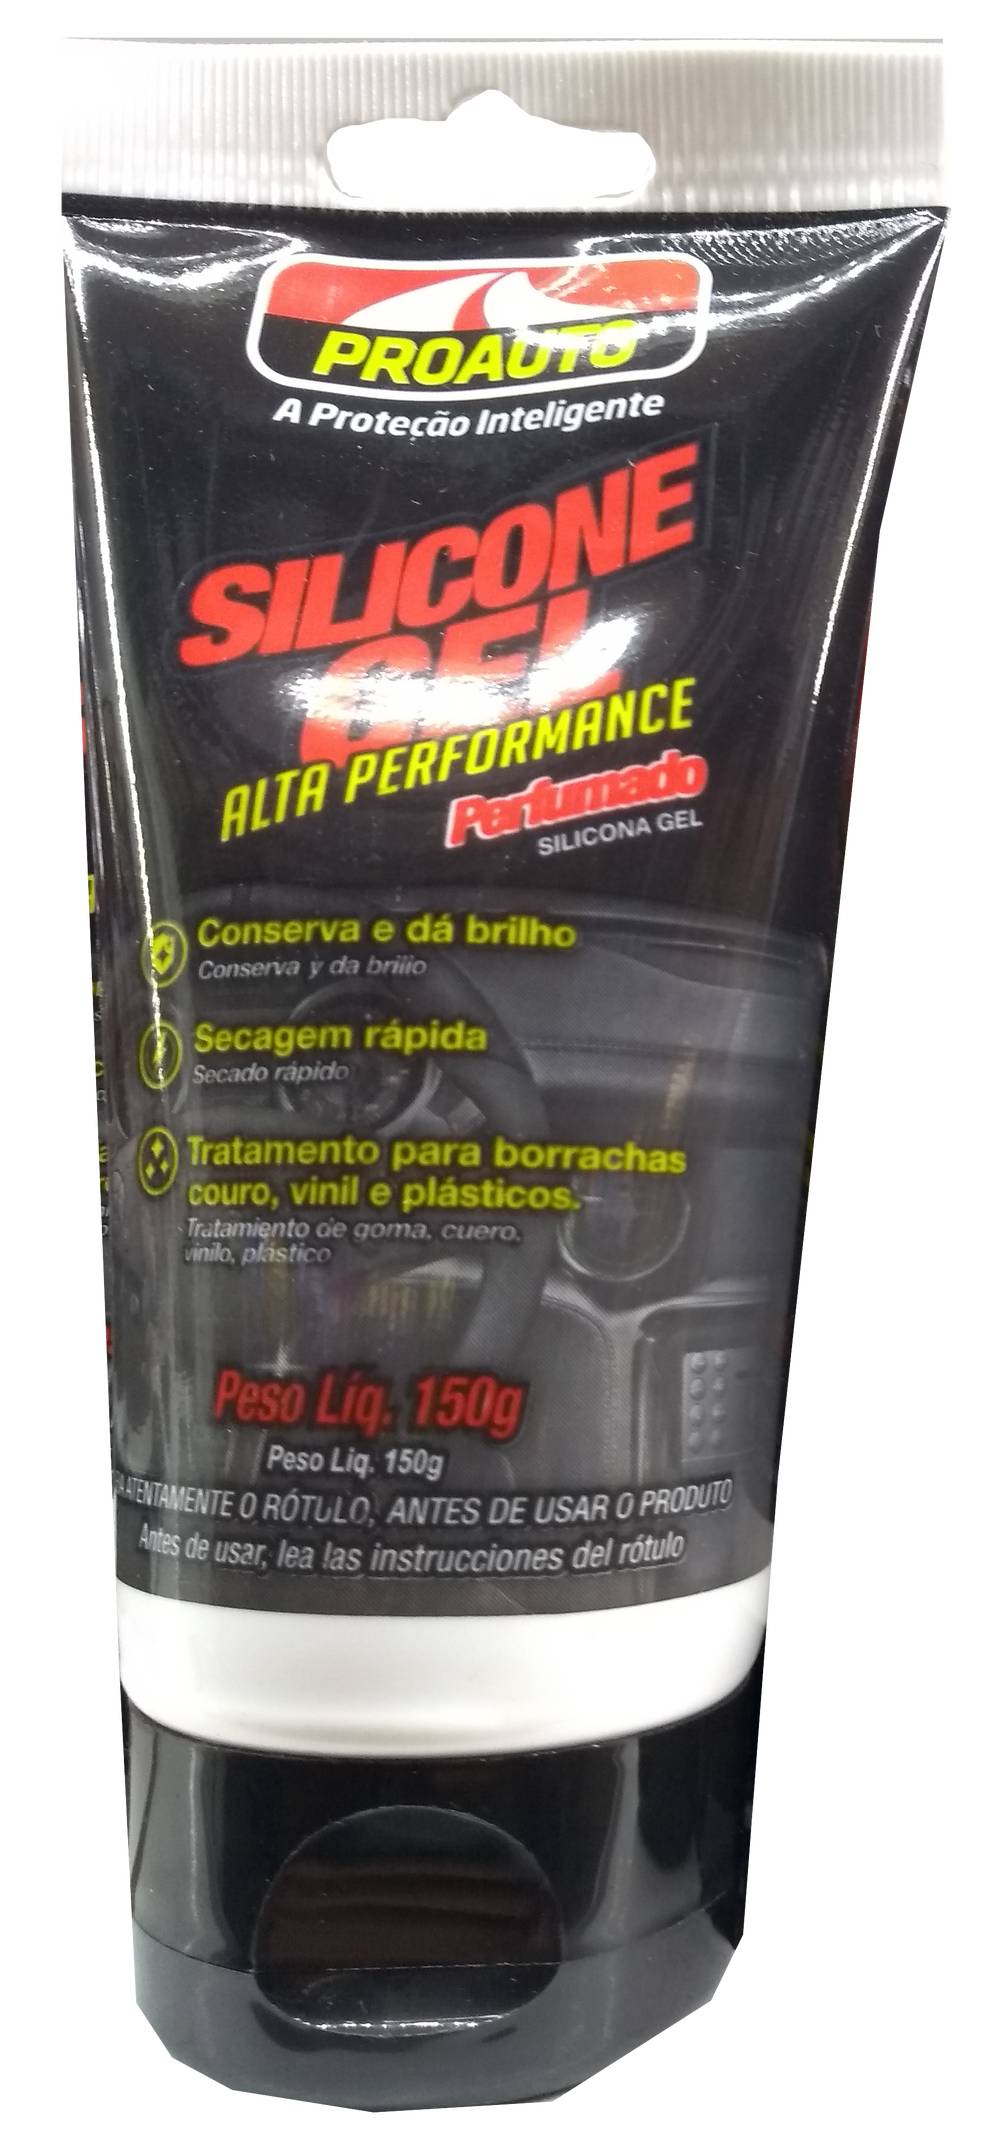 Proauto silicone em gel perfumado alta performance (150g)